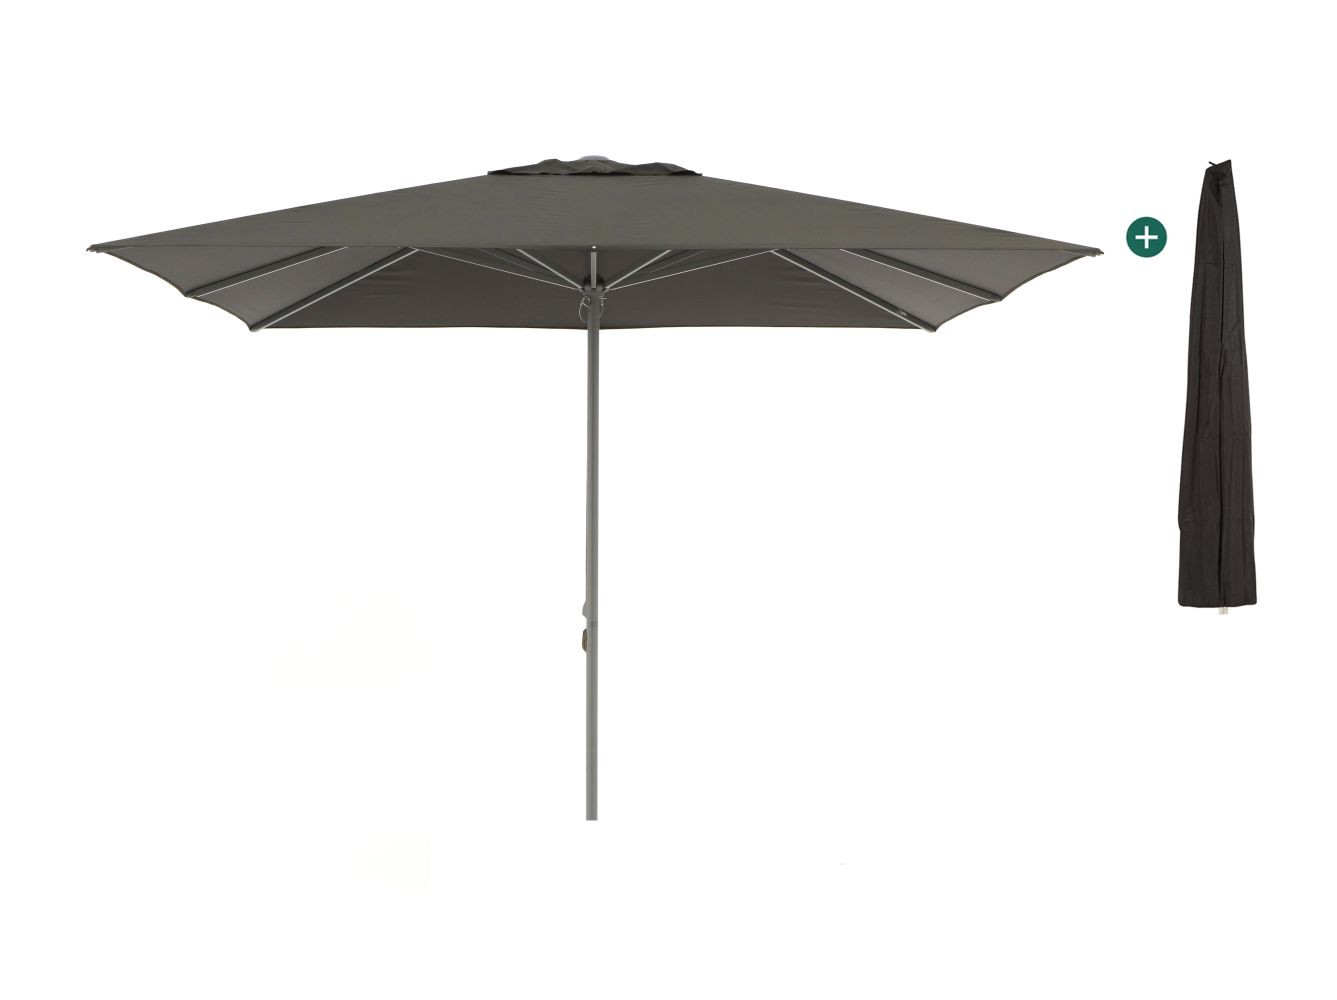 Shadowline Cuba parasol 350x350cm - Laagste prijsgarantie!